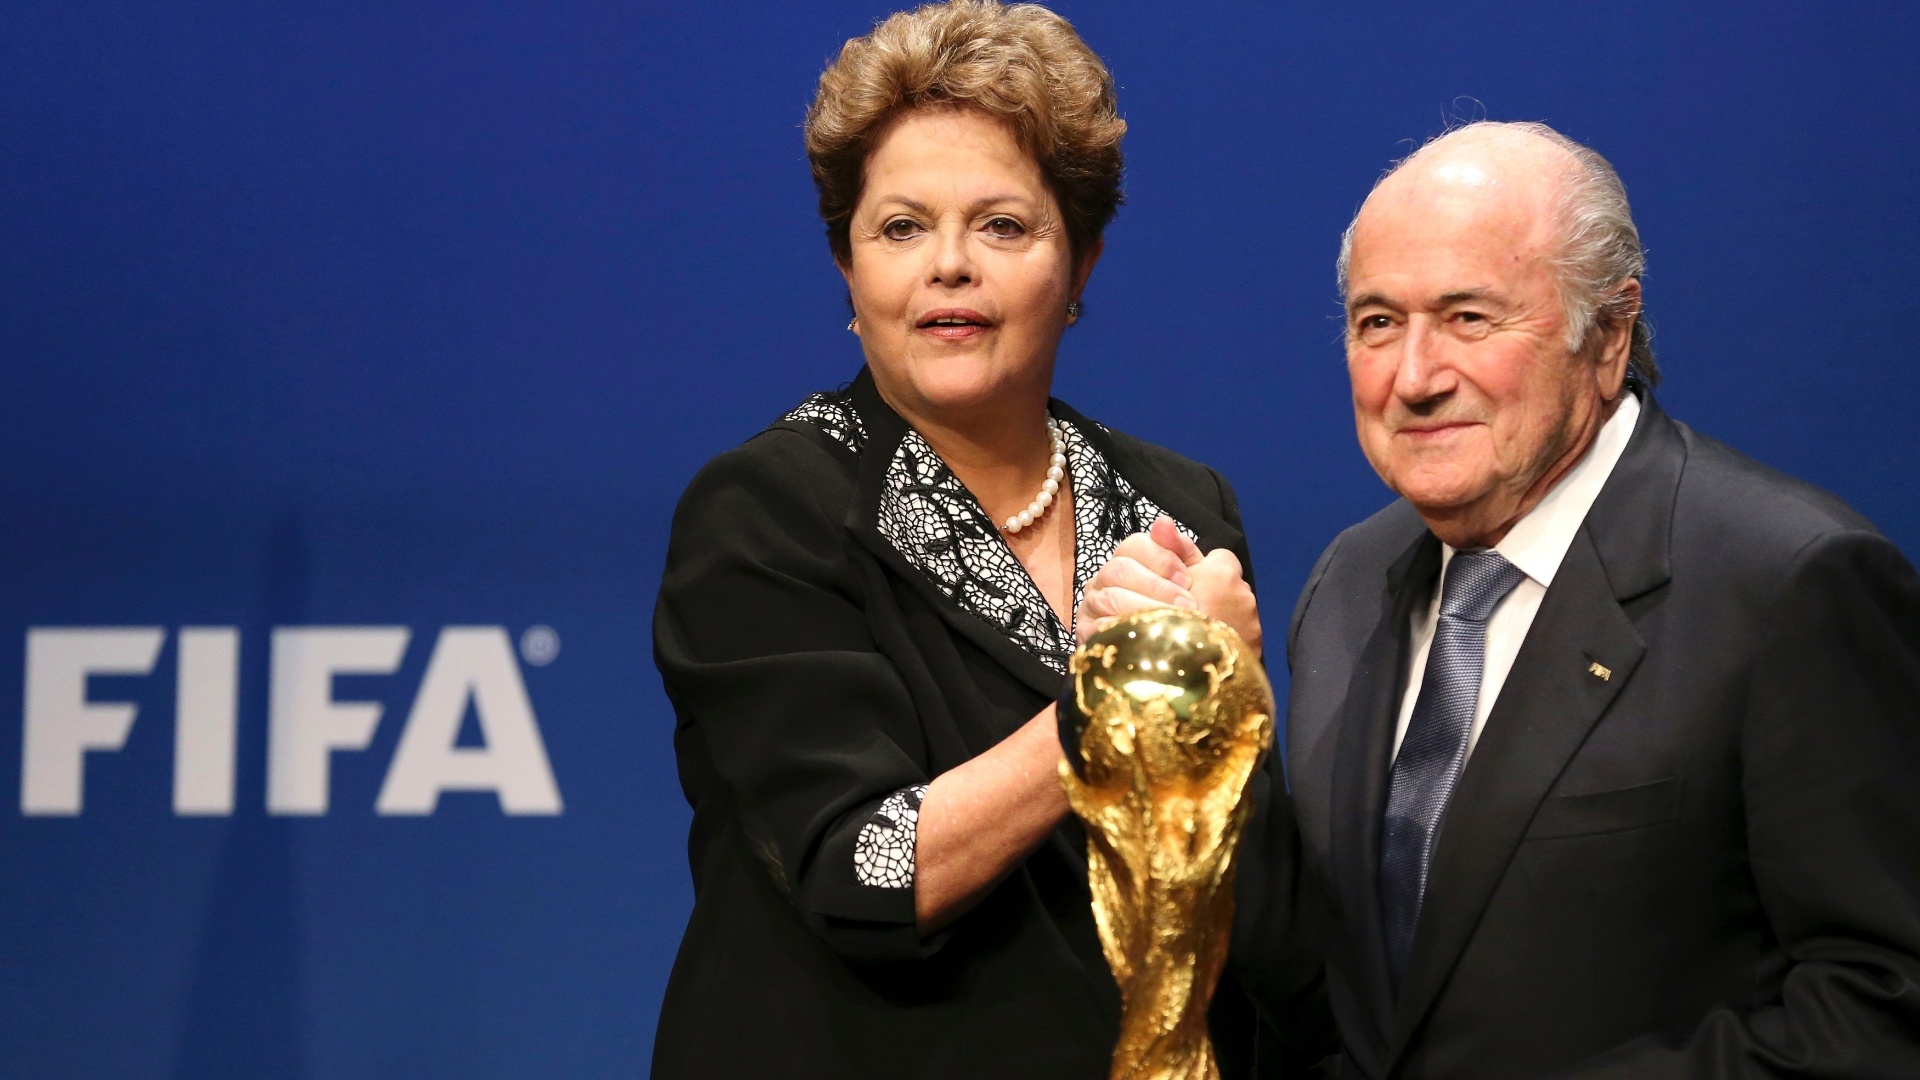 Para quê serviu a Copa do Mundo no Brasil?